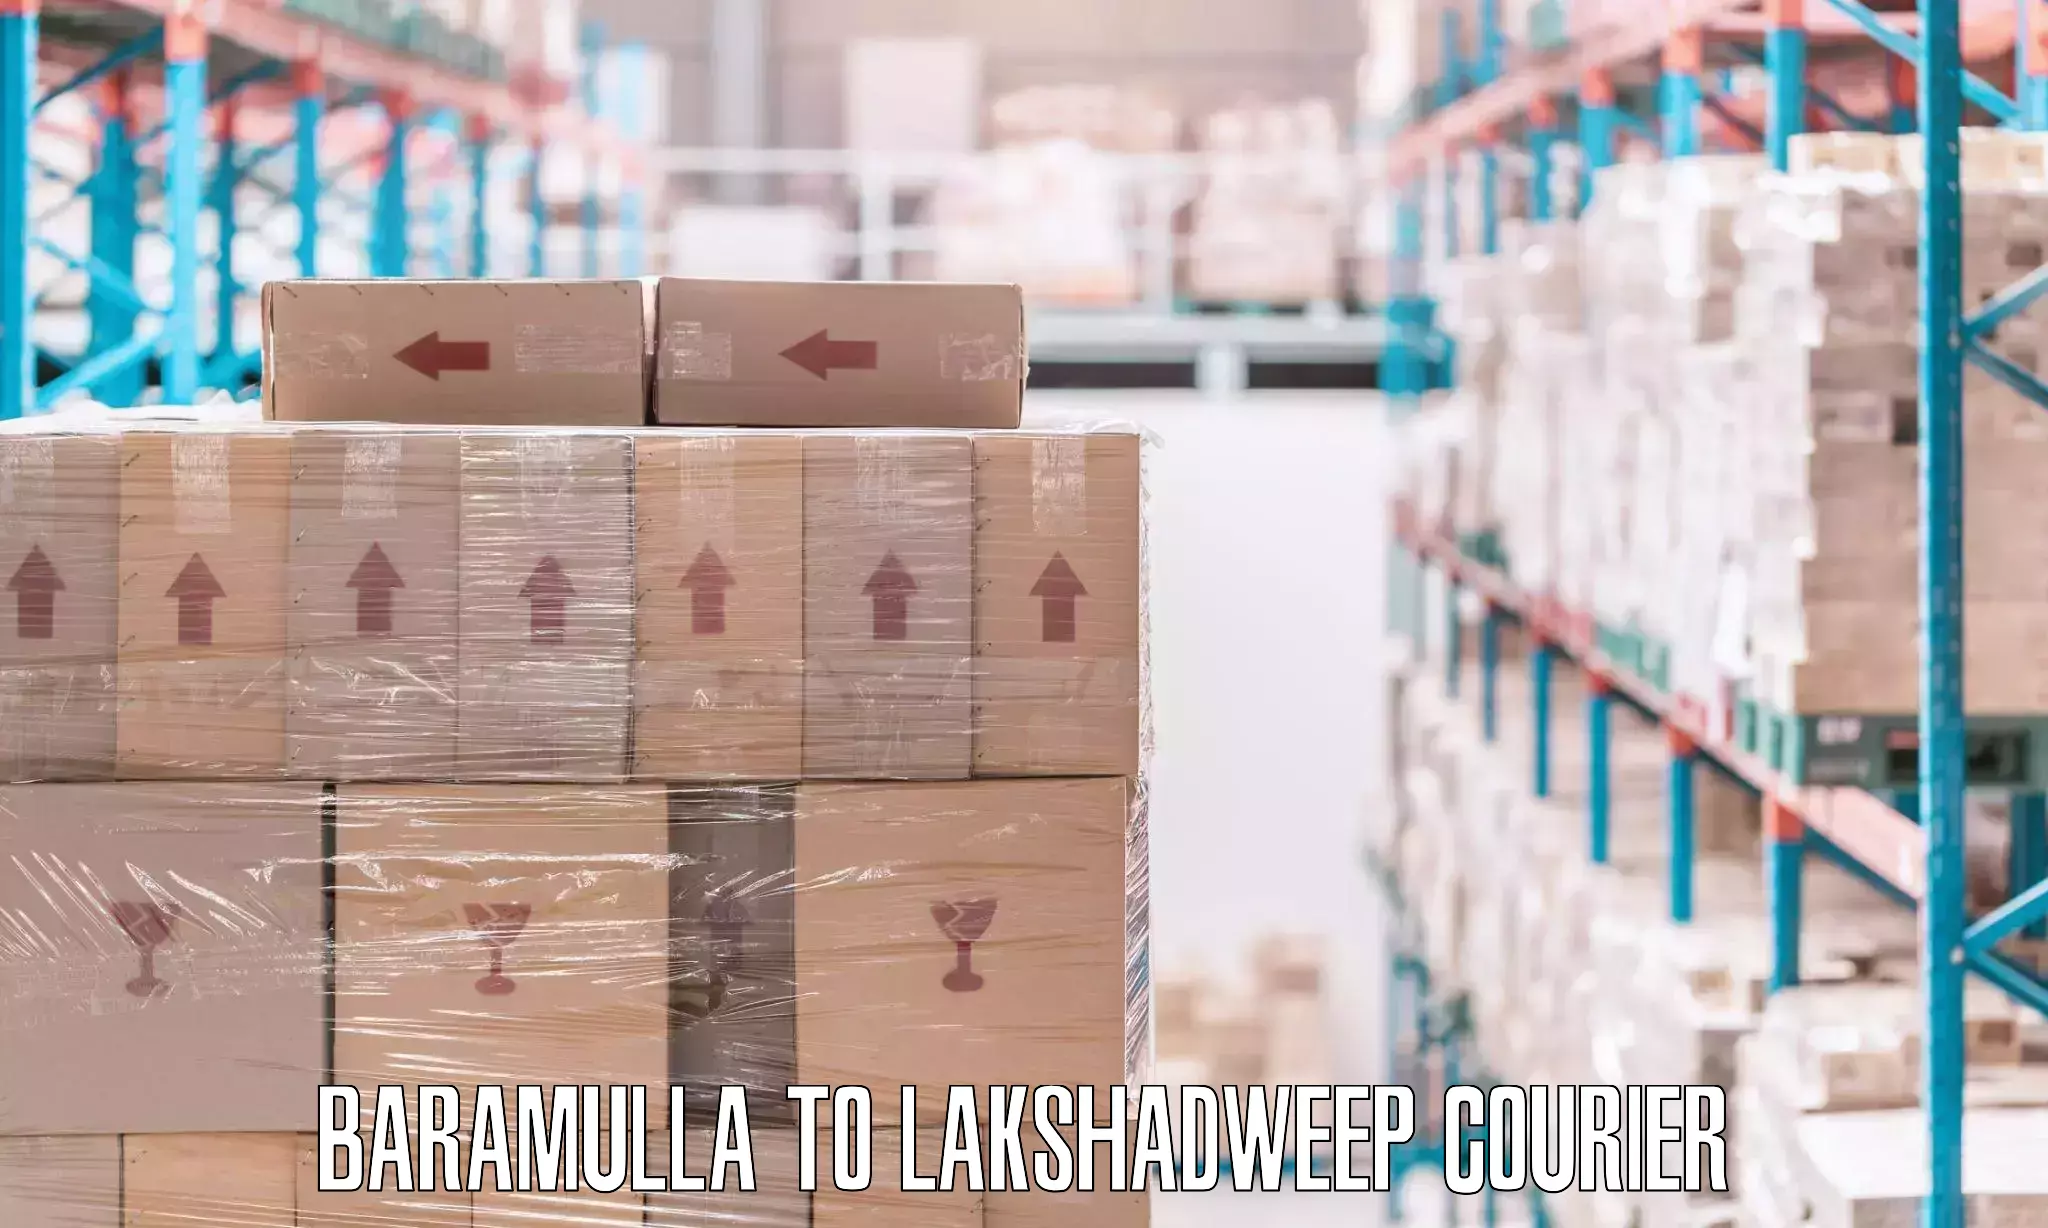 Professional moving company Baramulla to Lakshadweep